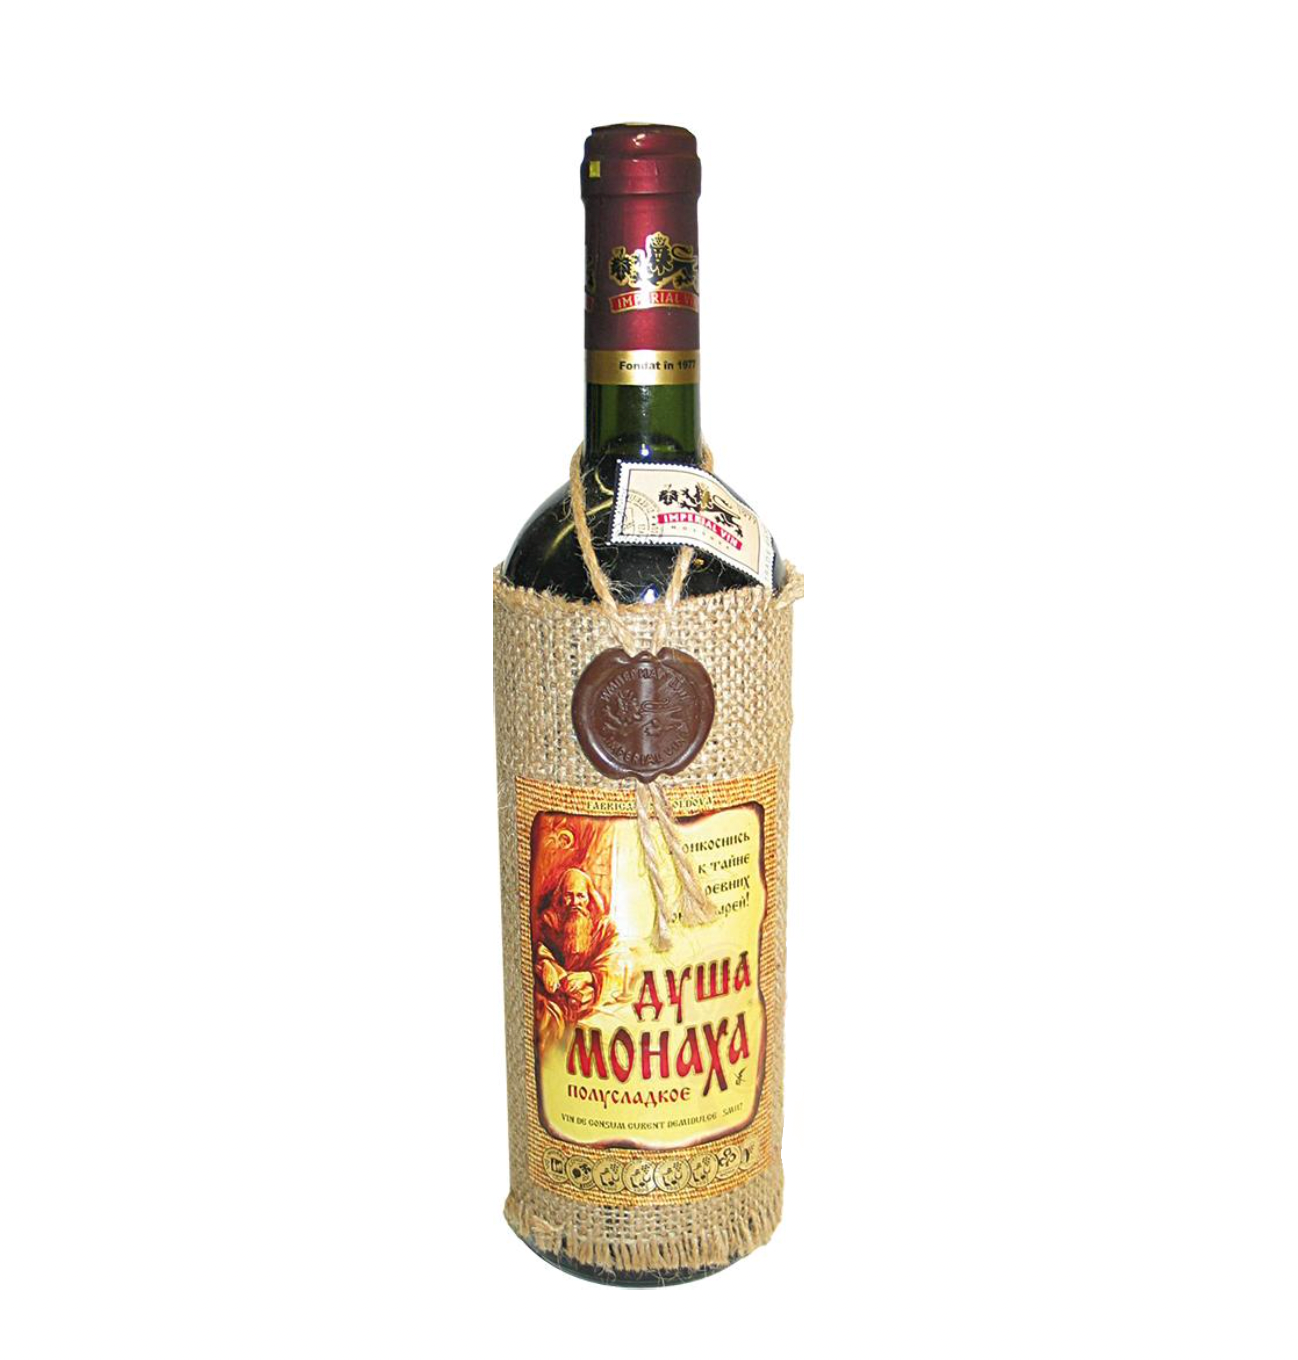 Rode wijn uit Moldavië, halfzoet, 12,5% alc. 750ml